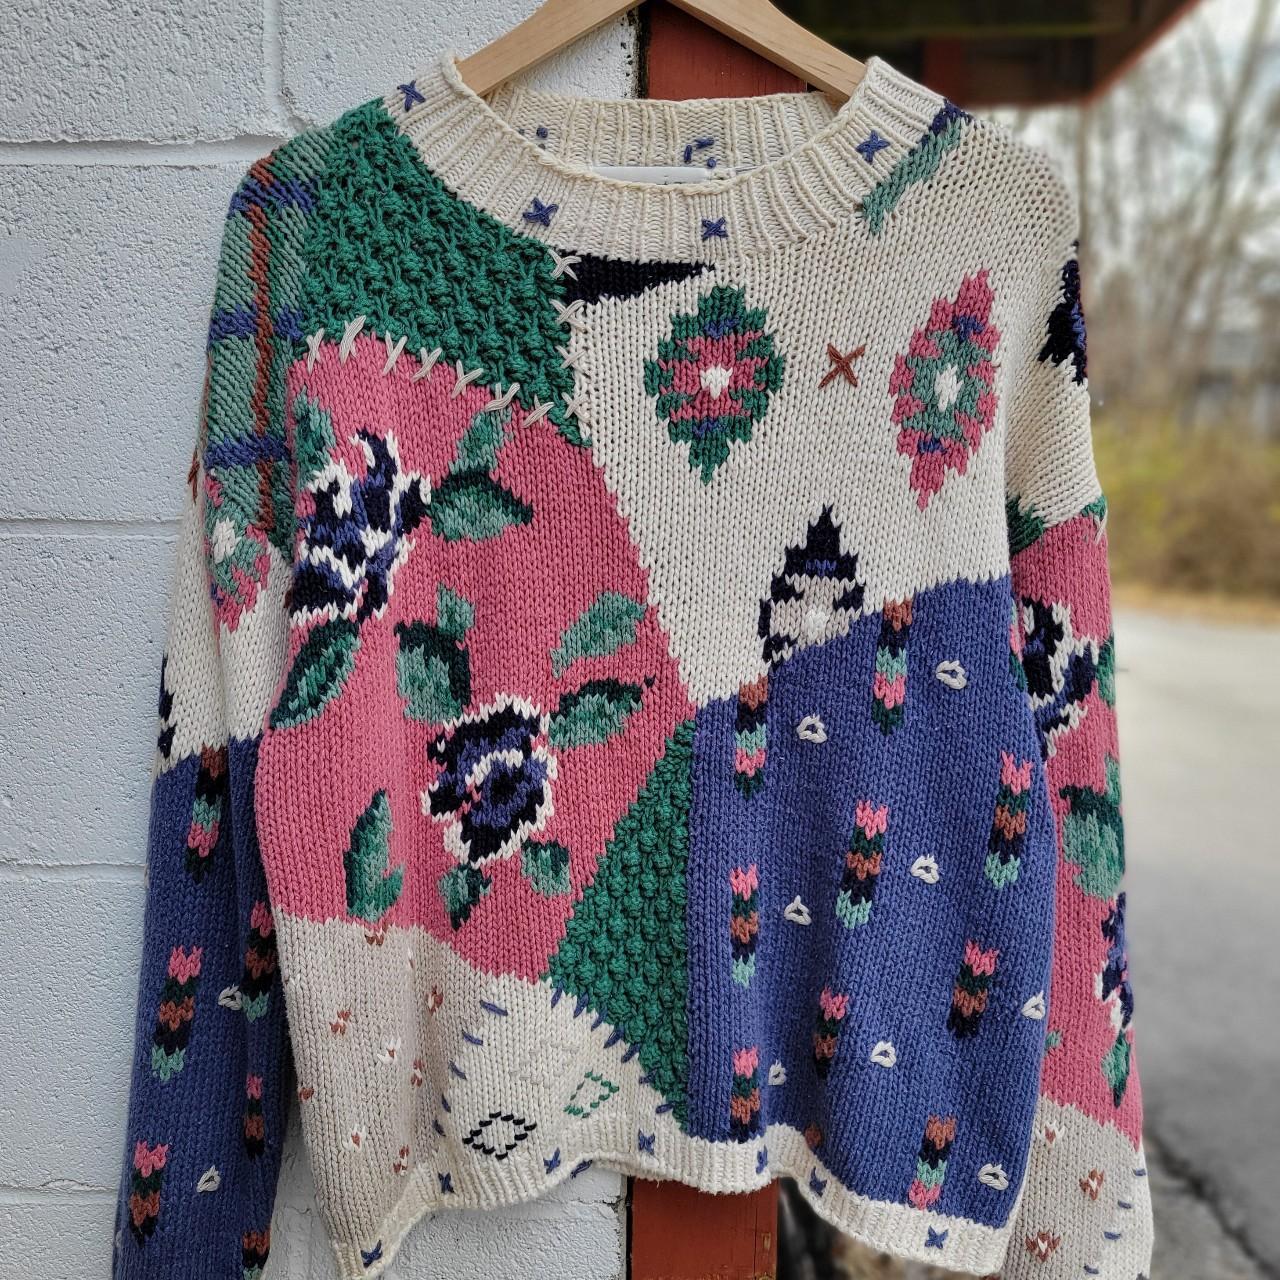 Vintage flower hand knit sweater. Rare artsy aop... - Depop